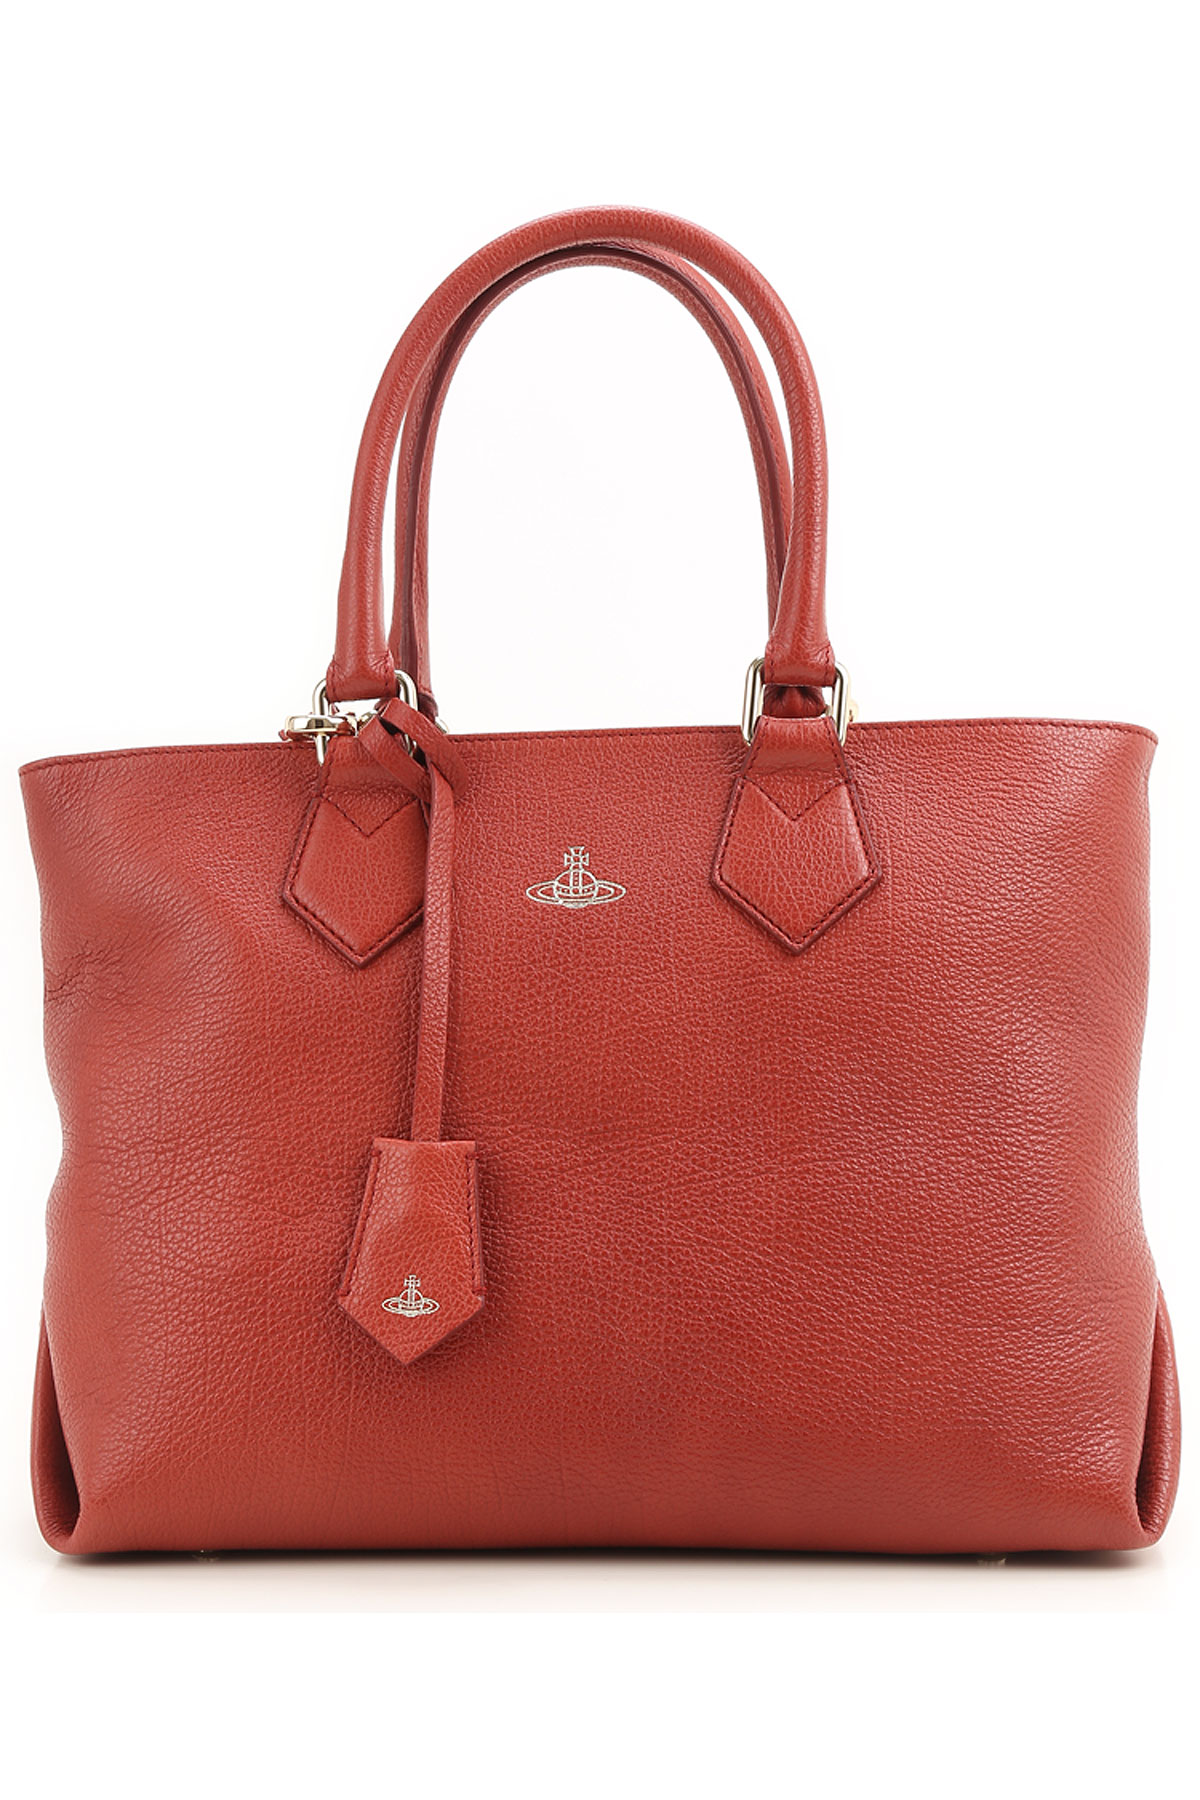 Handbags Vivienne Westwood, Style code: 131002-ros-